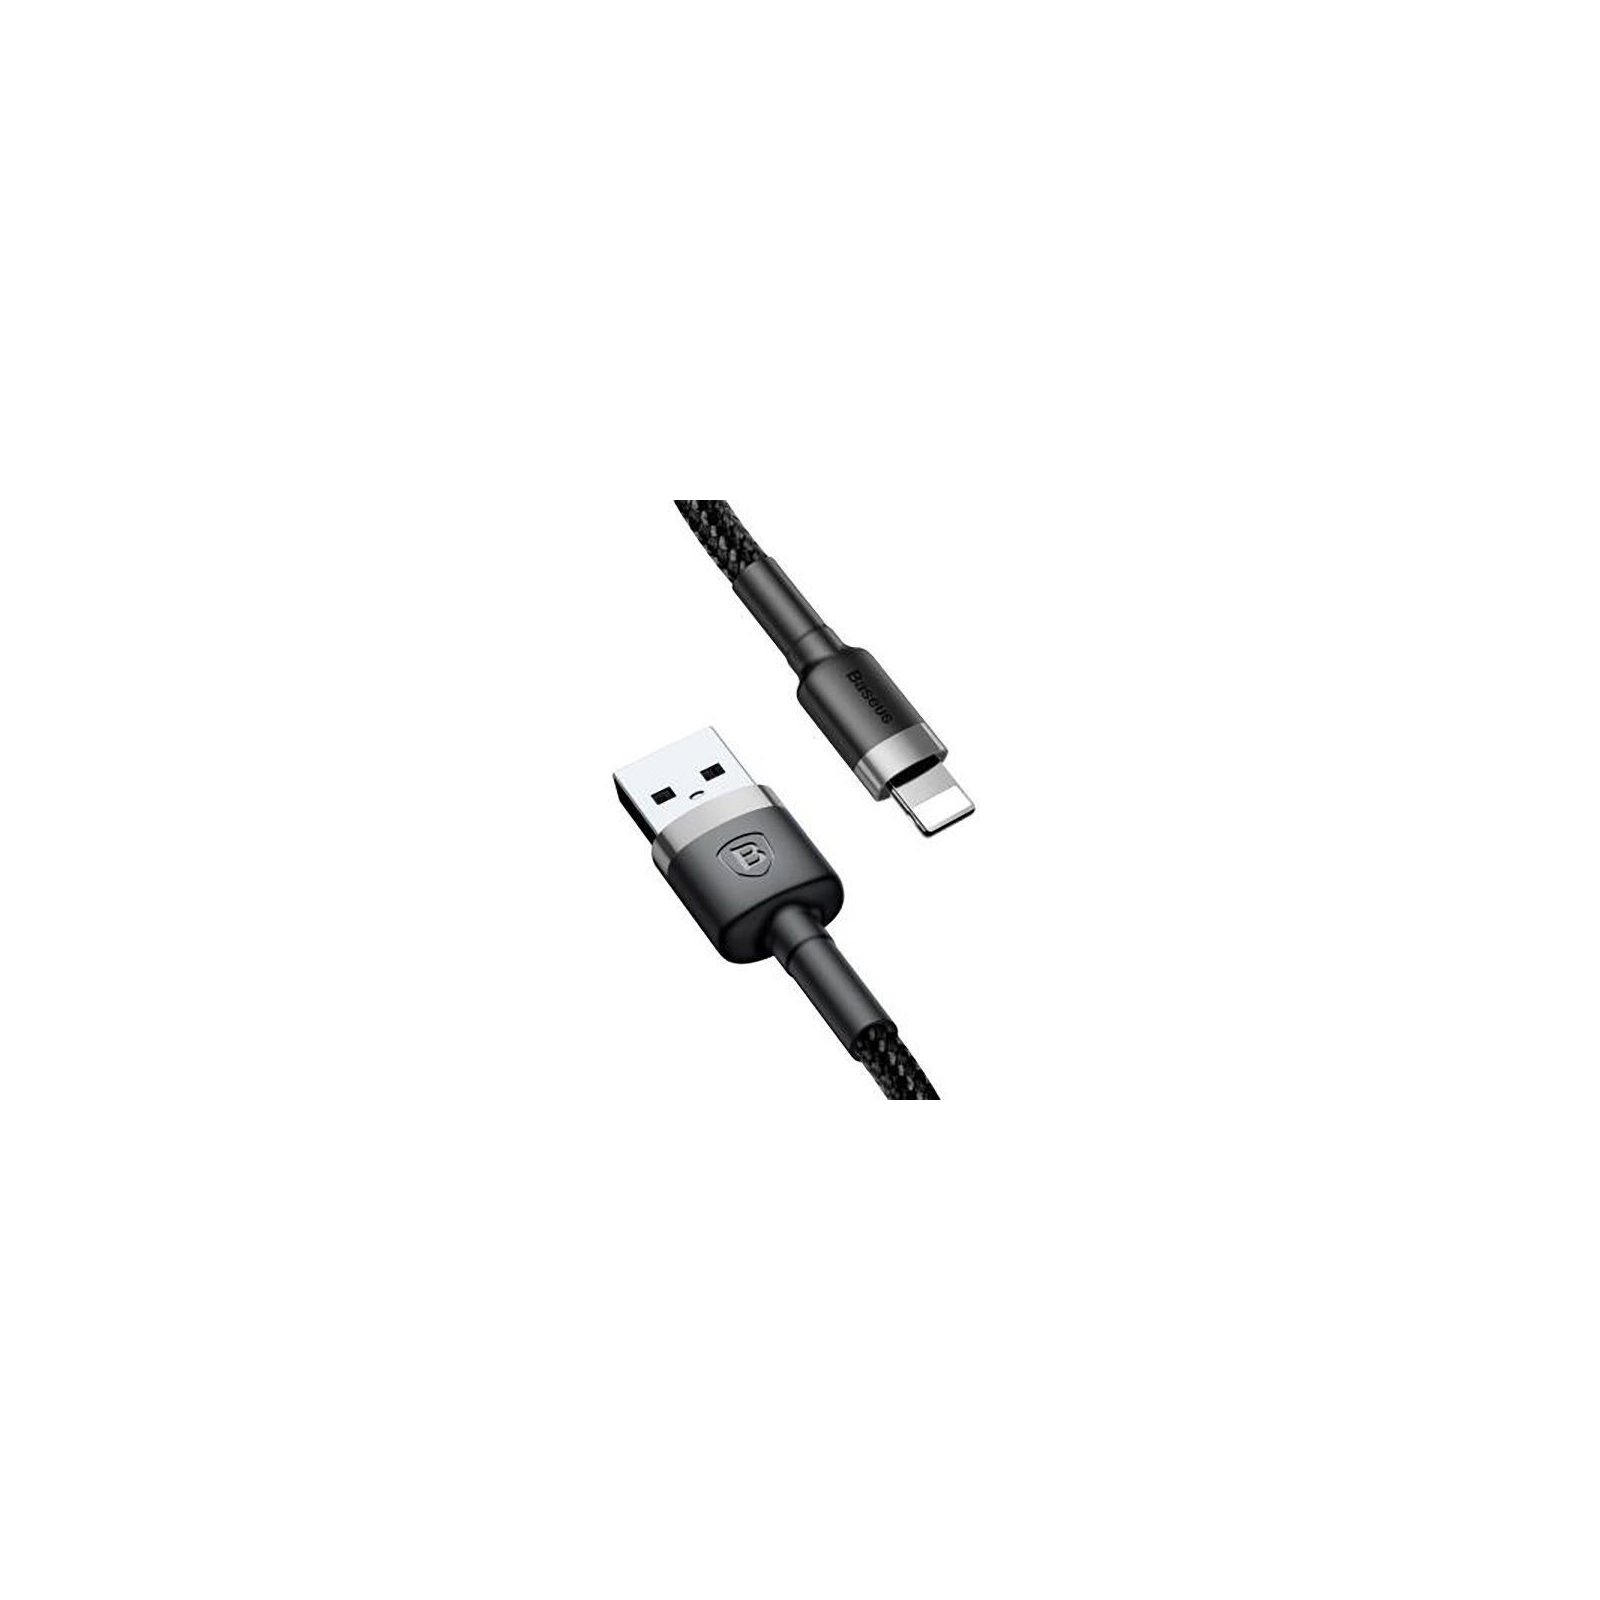 Дата кабель USB 2.0 AM to Lightning 1.0m Cafule 2.4A gray+black Baseus (CALKLF-BG1) изображение 2